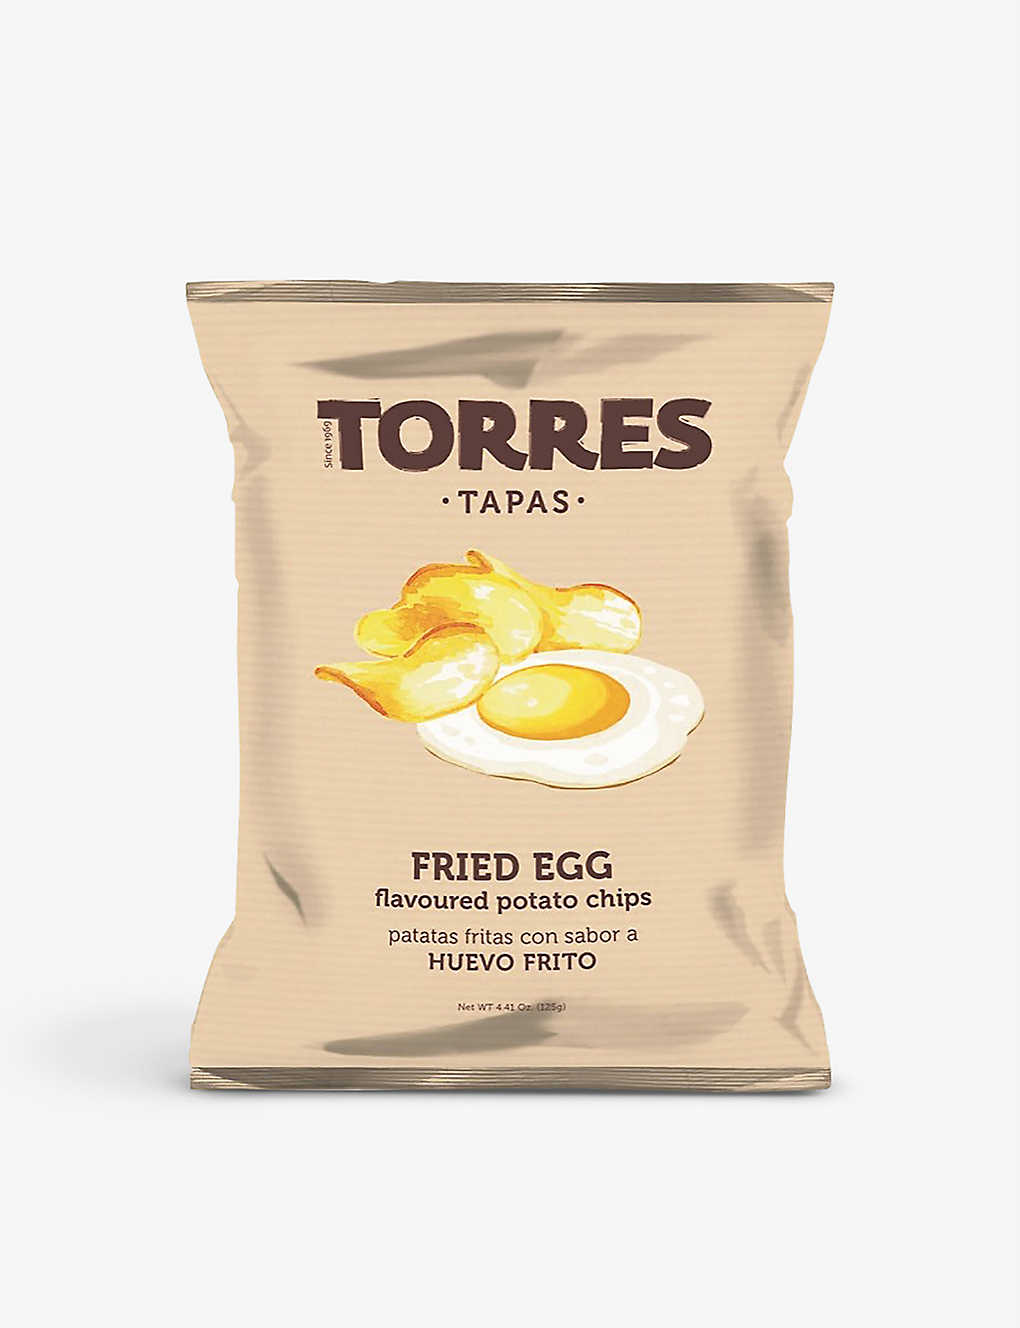 Torres Tapas Fried Egg Flavour Crisps